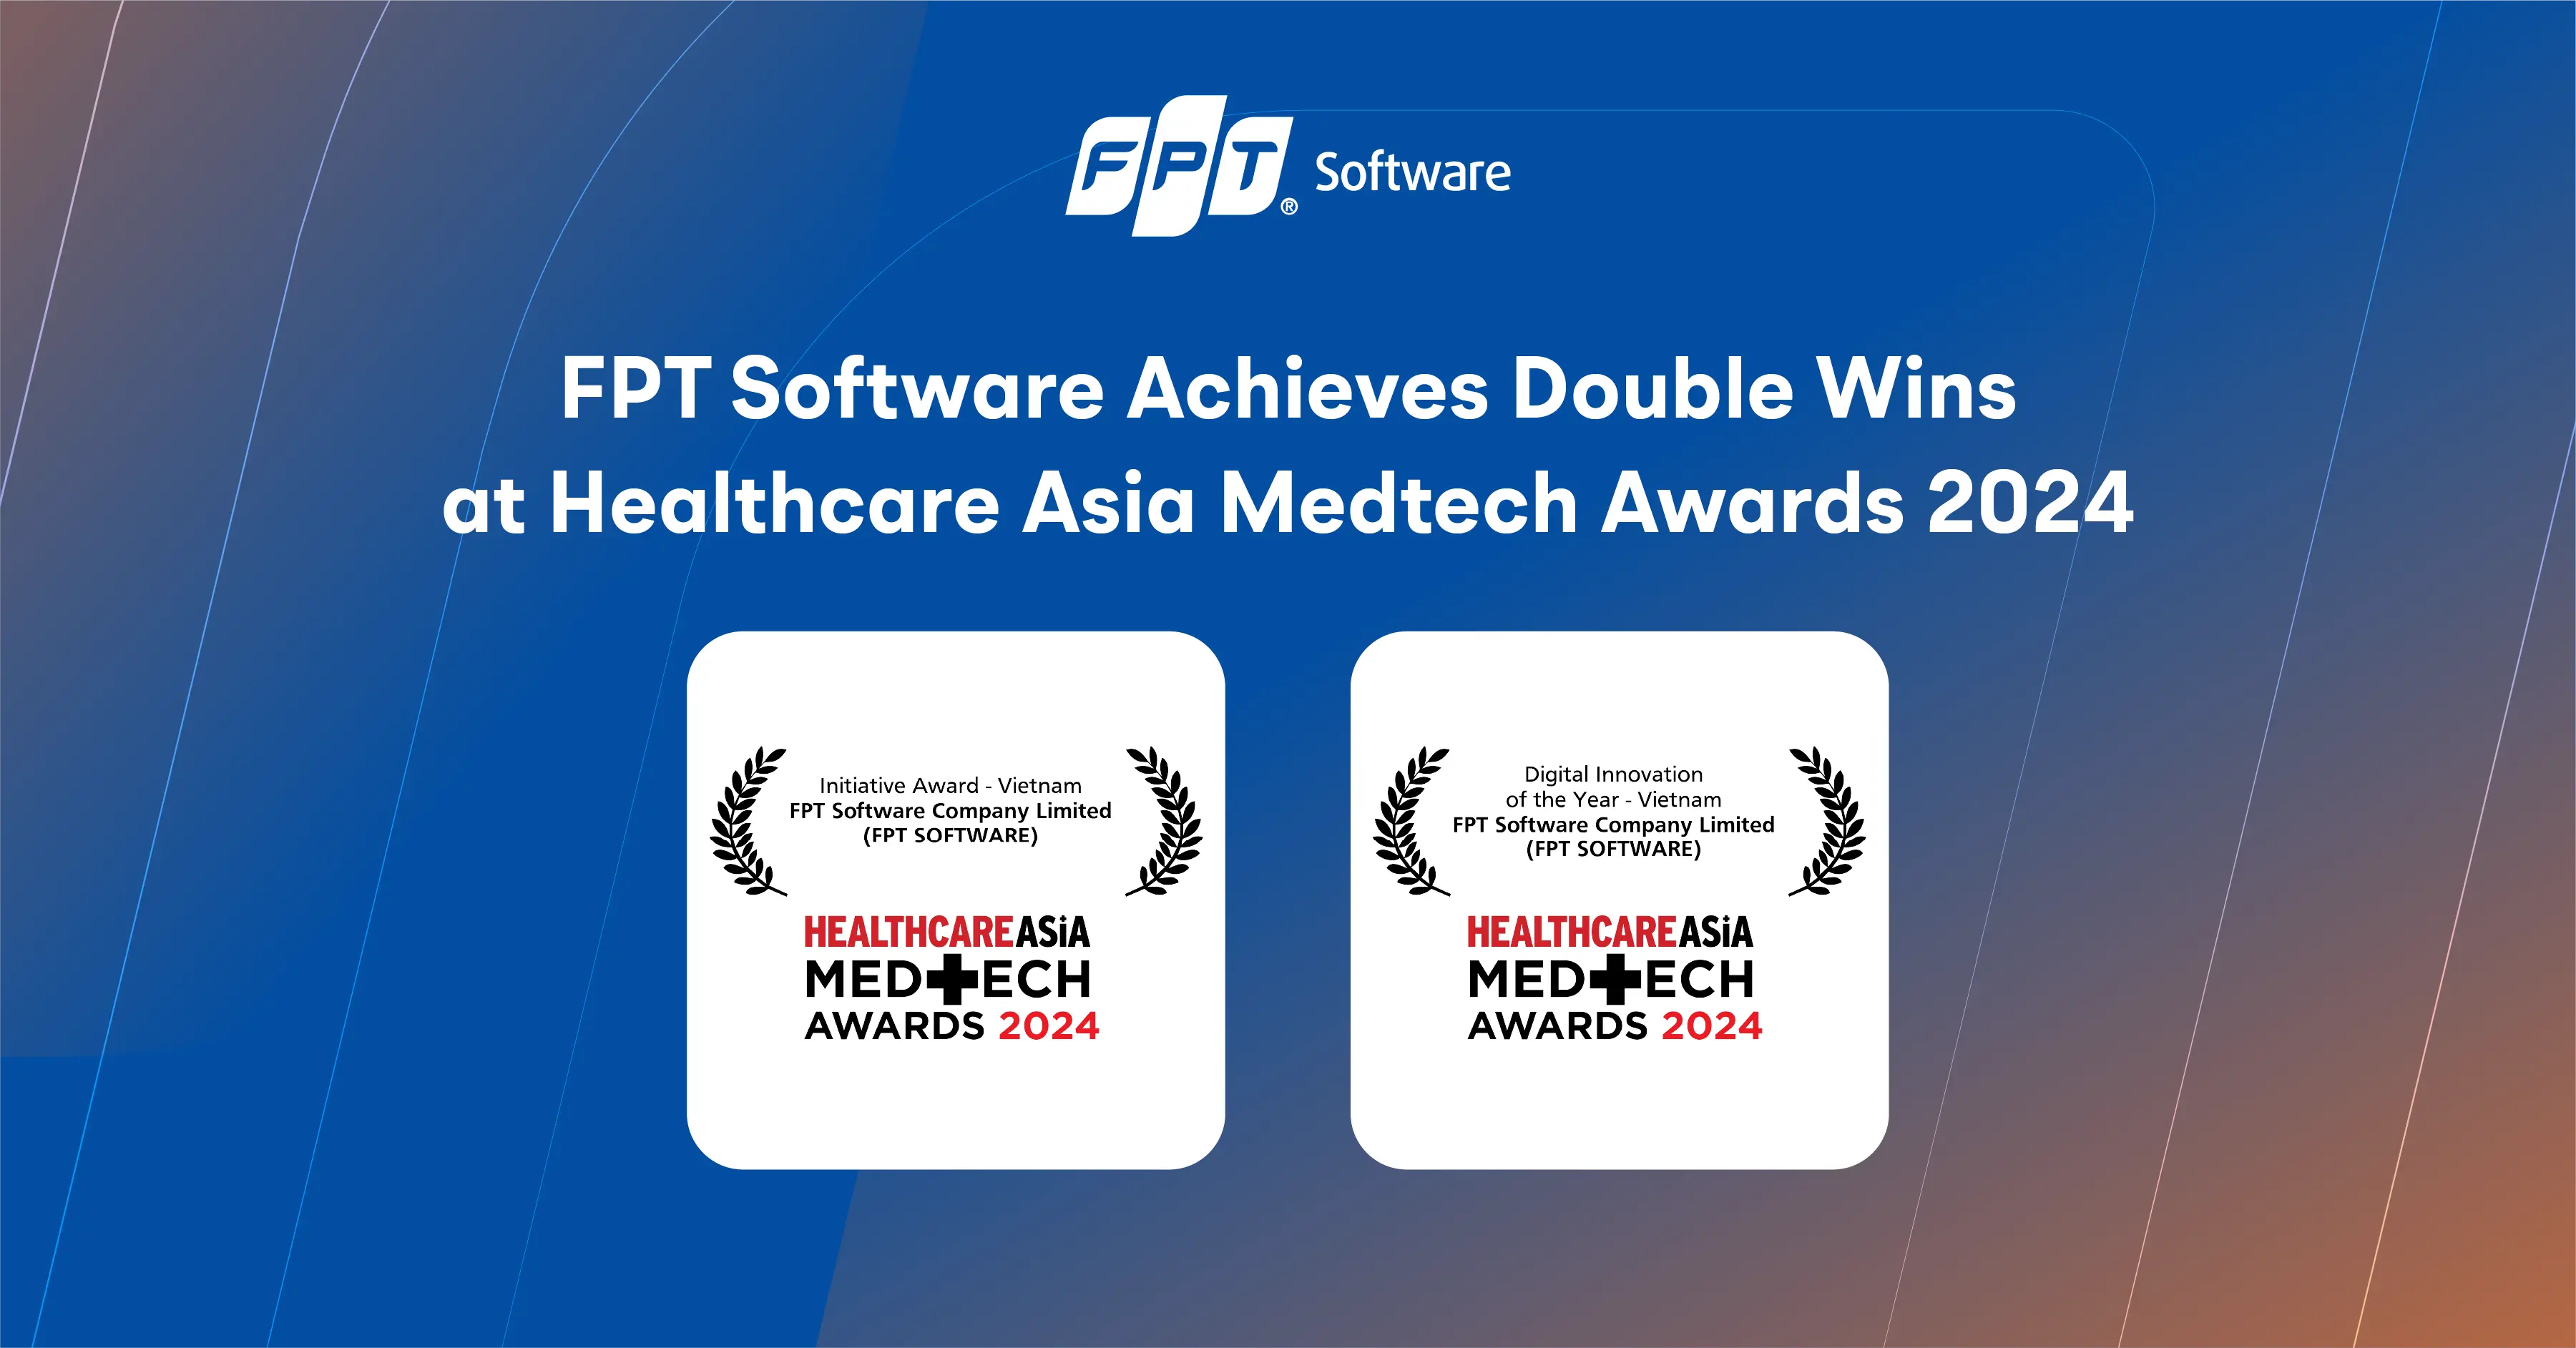 Healthcare Asia Medtech Awards 2024